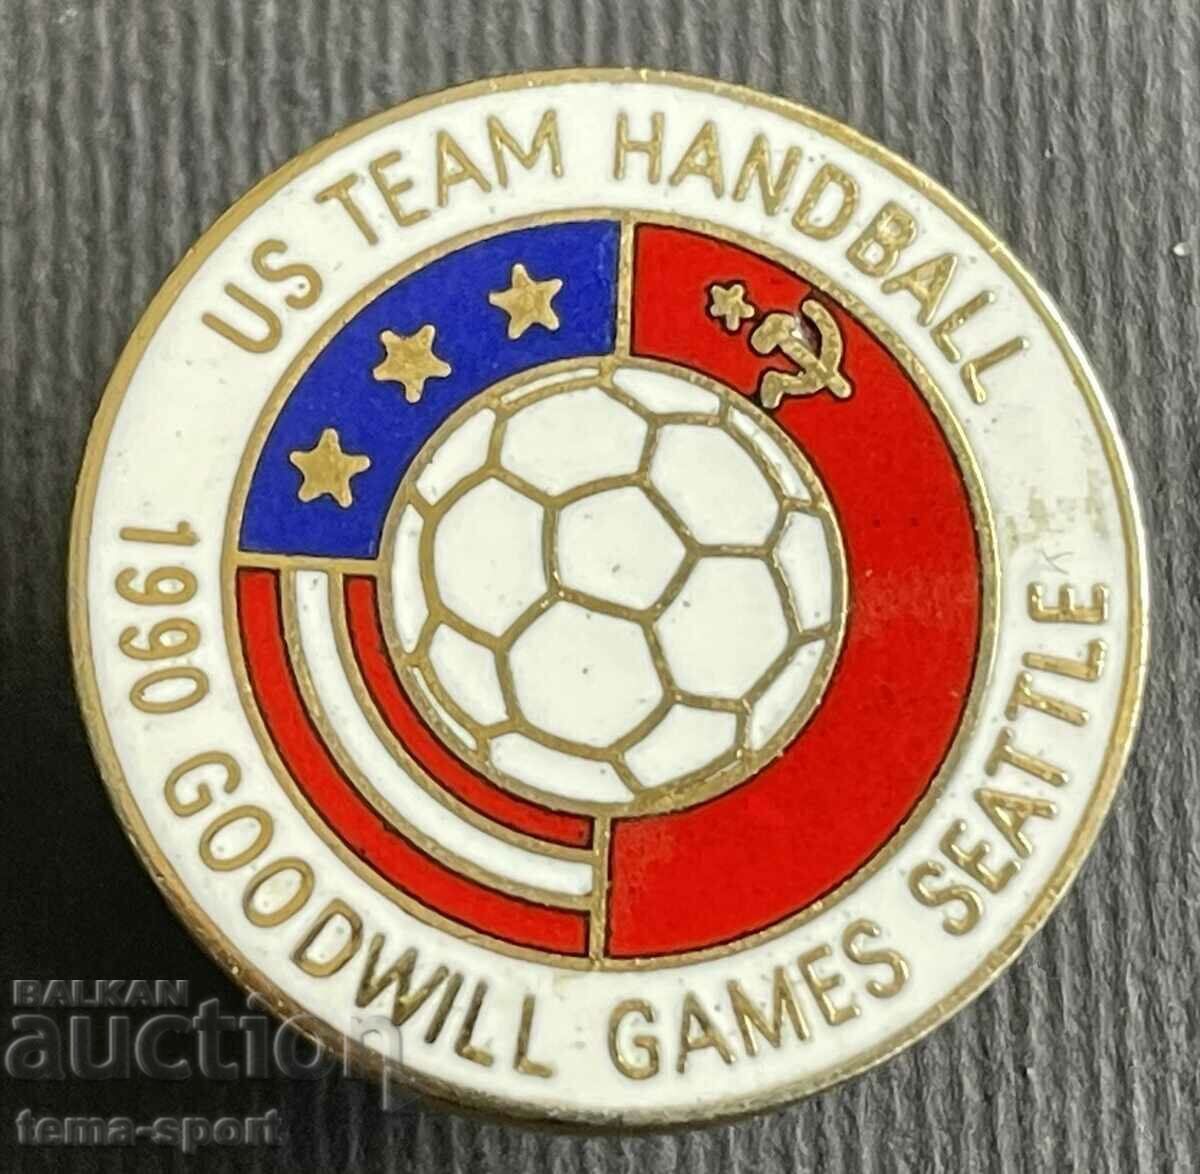 391 Η.Π.Α. ΕΣΣΔ Sign Team Hanbal ΗΠΑ Παιχνίδια καλής θέλησης Σμάλτο